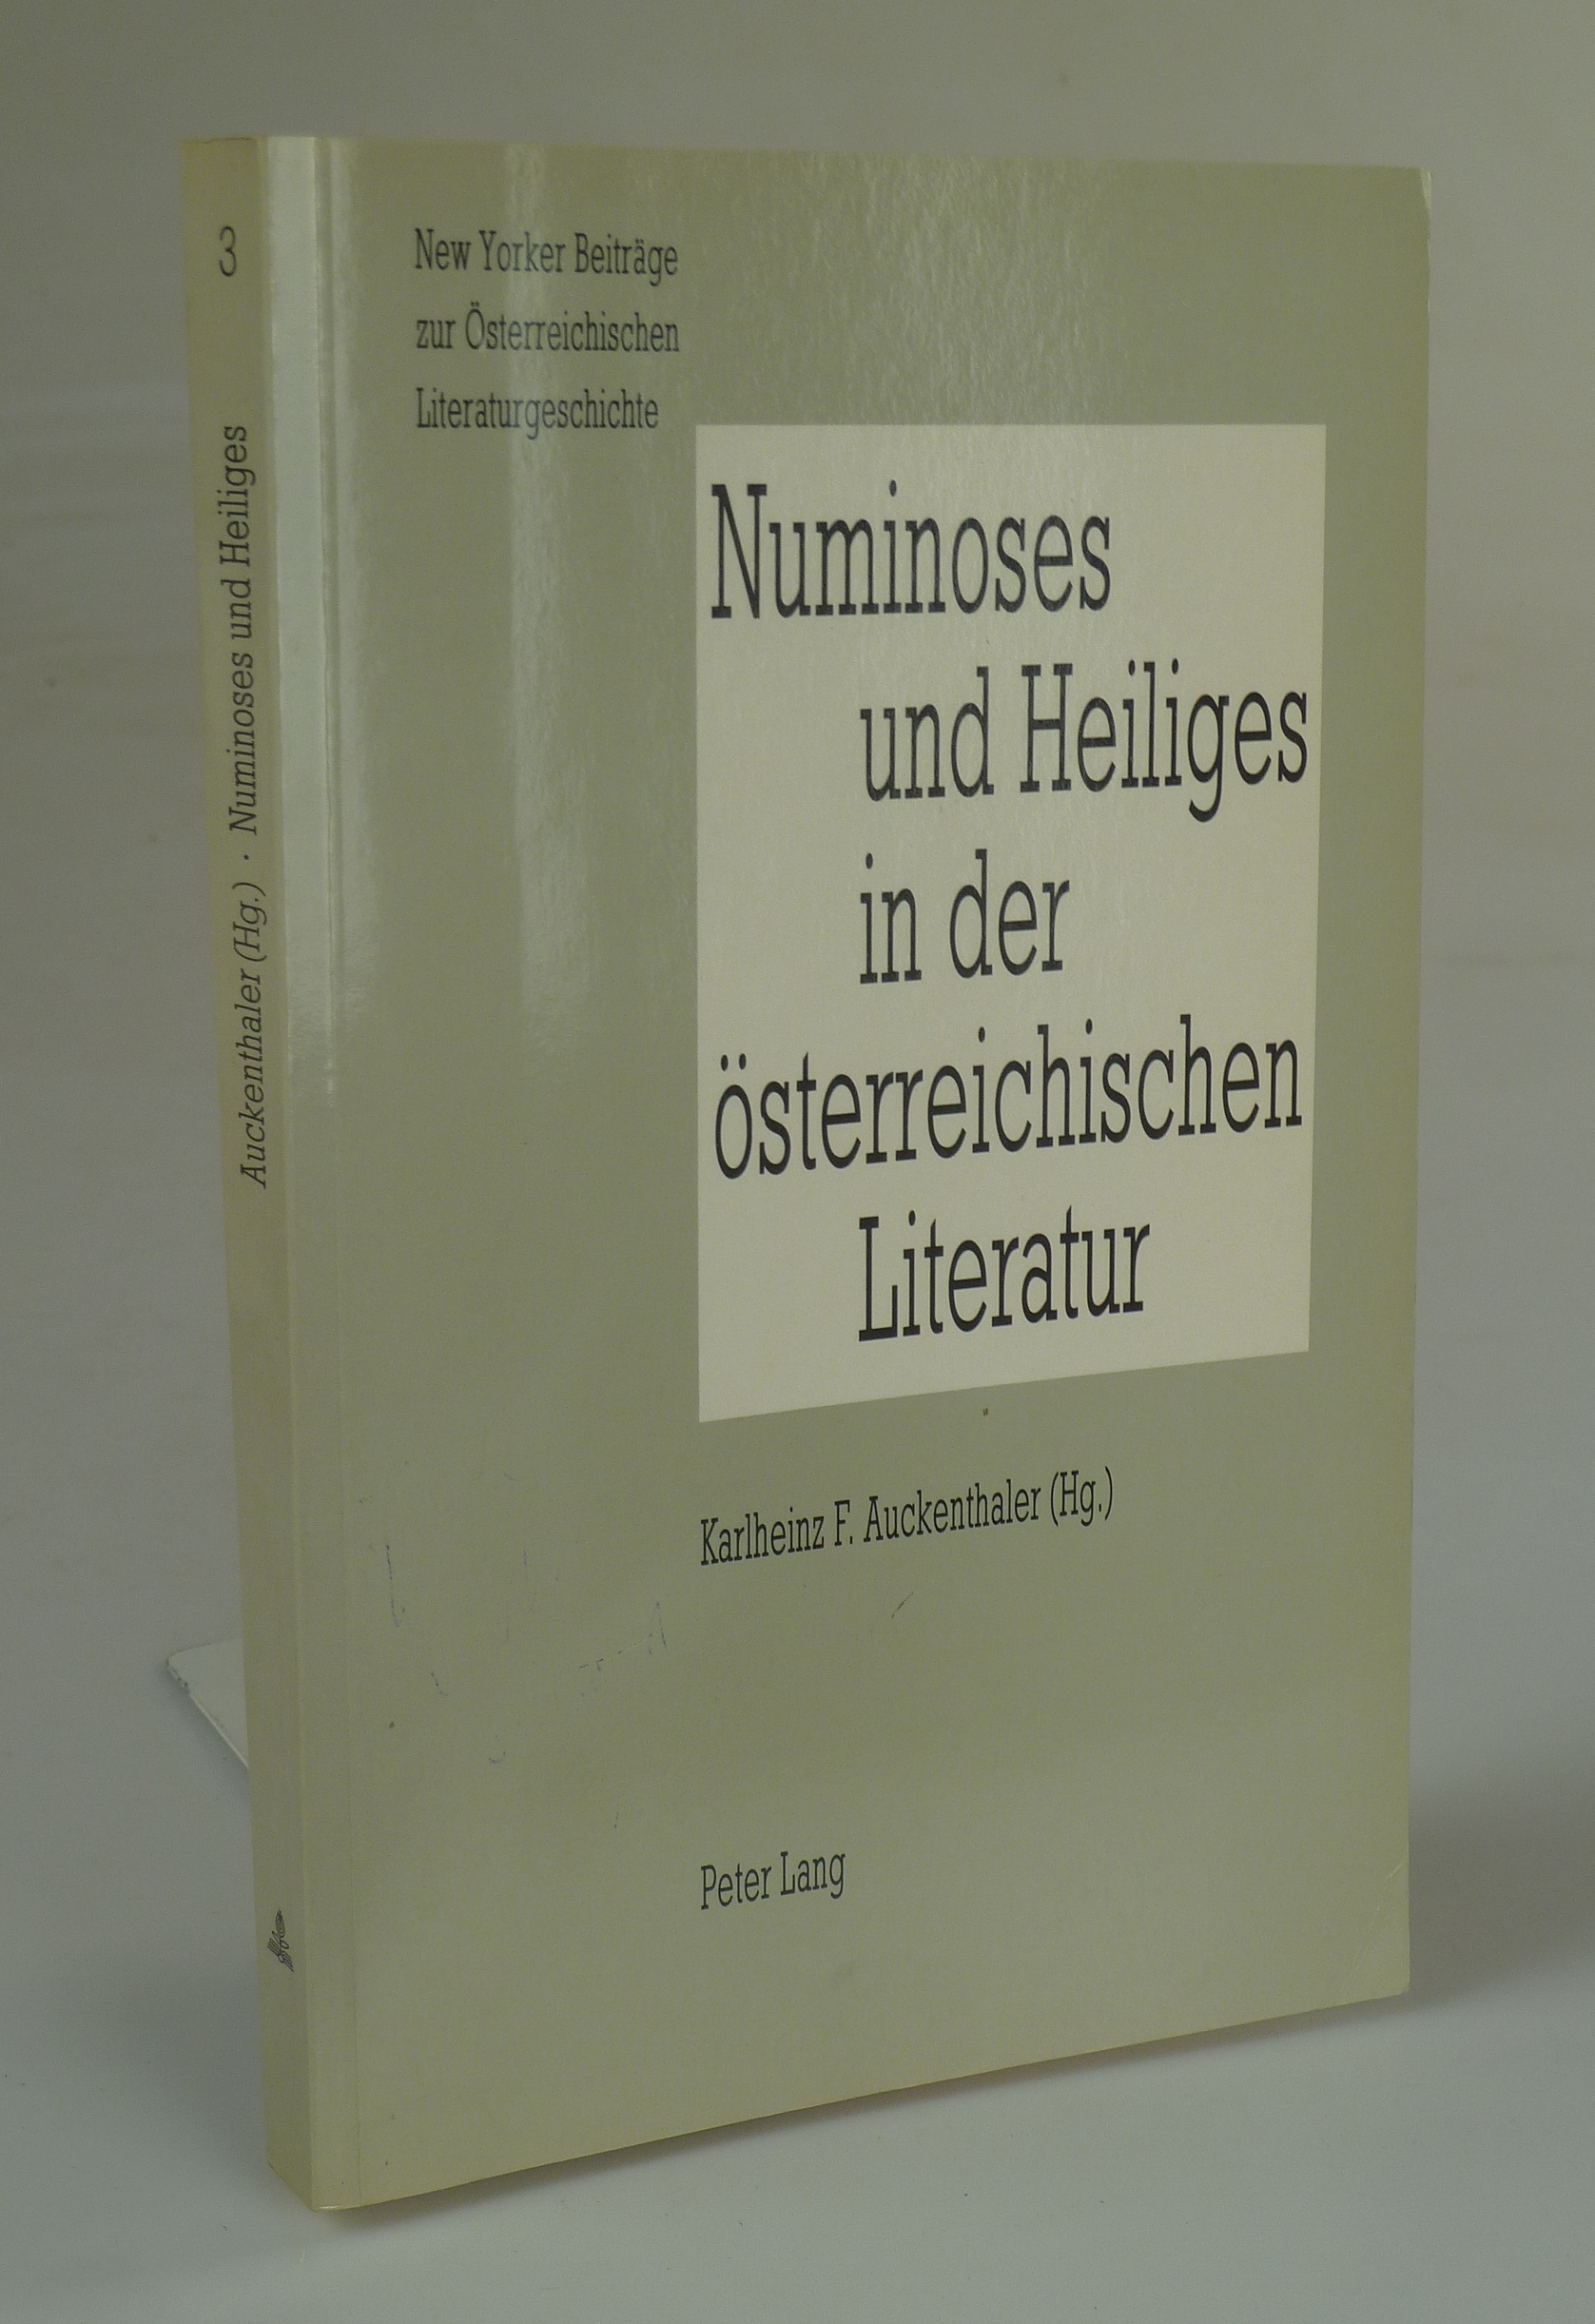 Numinoses und Heiliges in der österreichischen Literatur. - AUCKENTHALER, Karlheinz F. (Hrsg.).